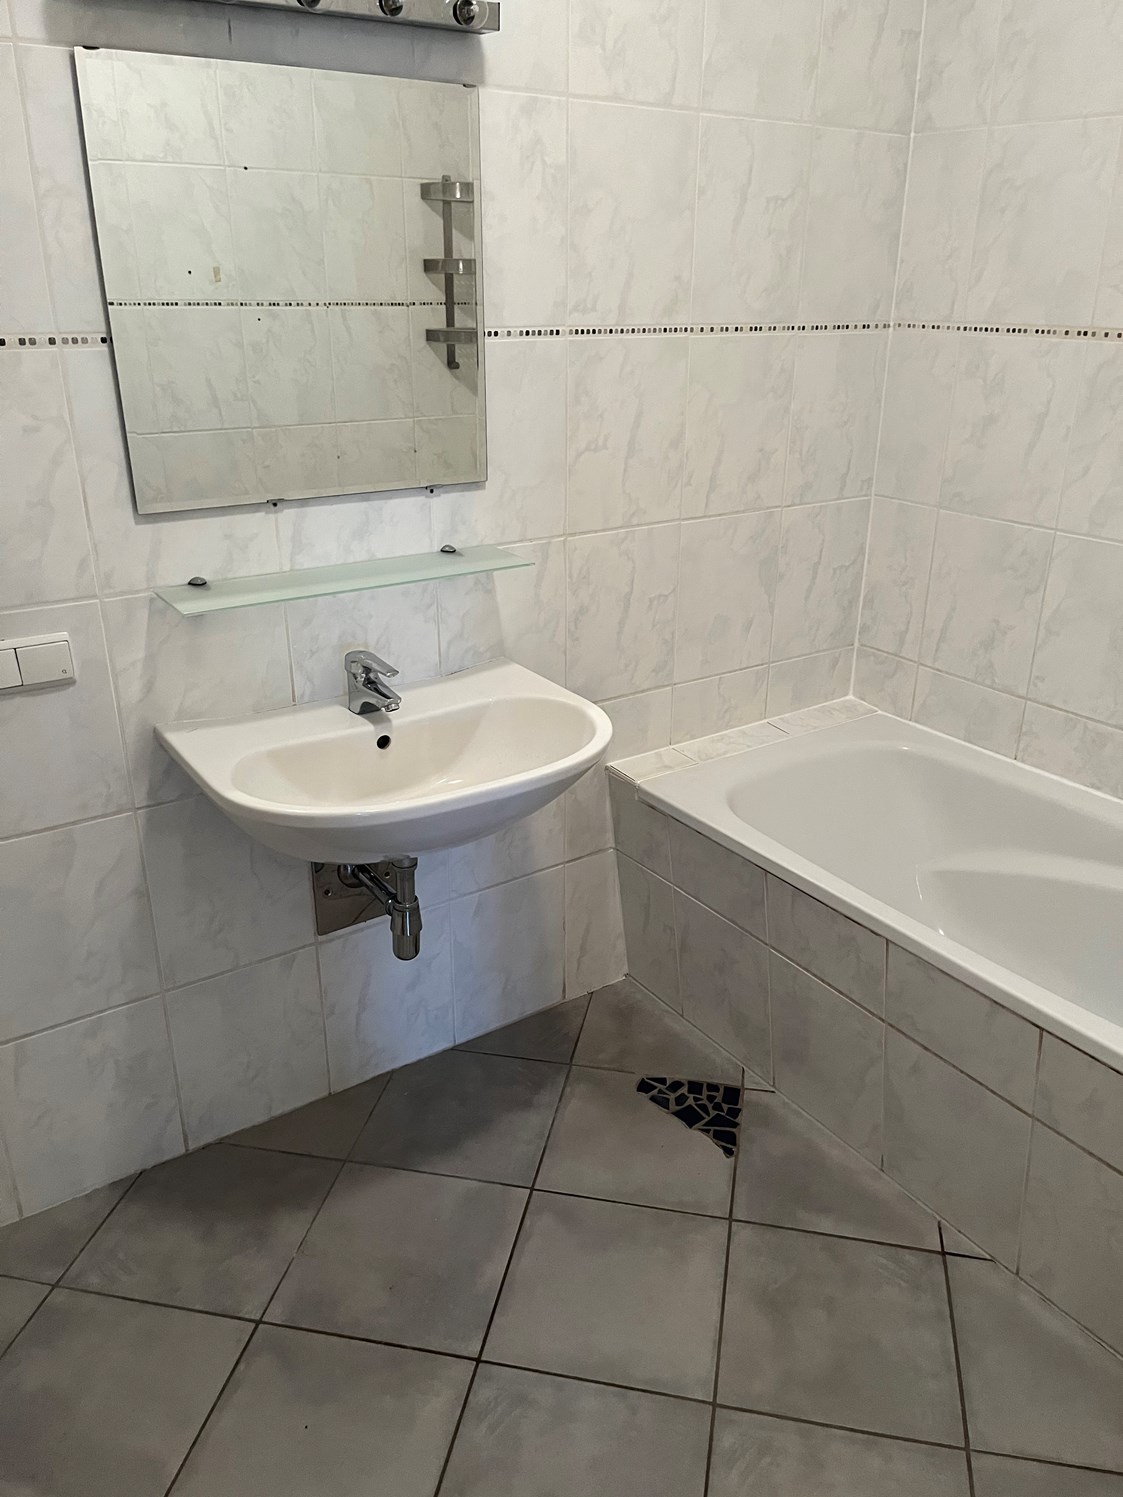 Monteurzimmer: Badezimmer mit Waschbecken und Badewanne in der Monteurunterkunft in Dobl-Zwaring. - Azra Sinanovic